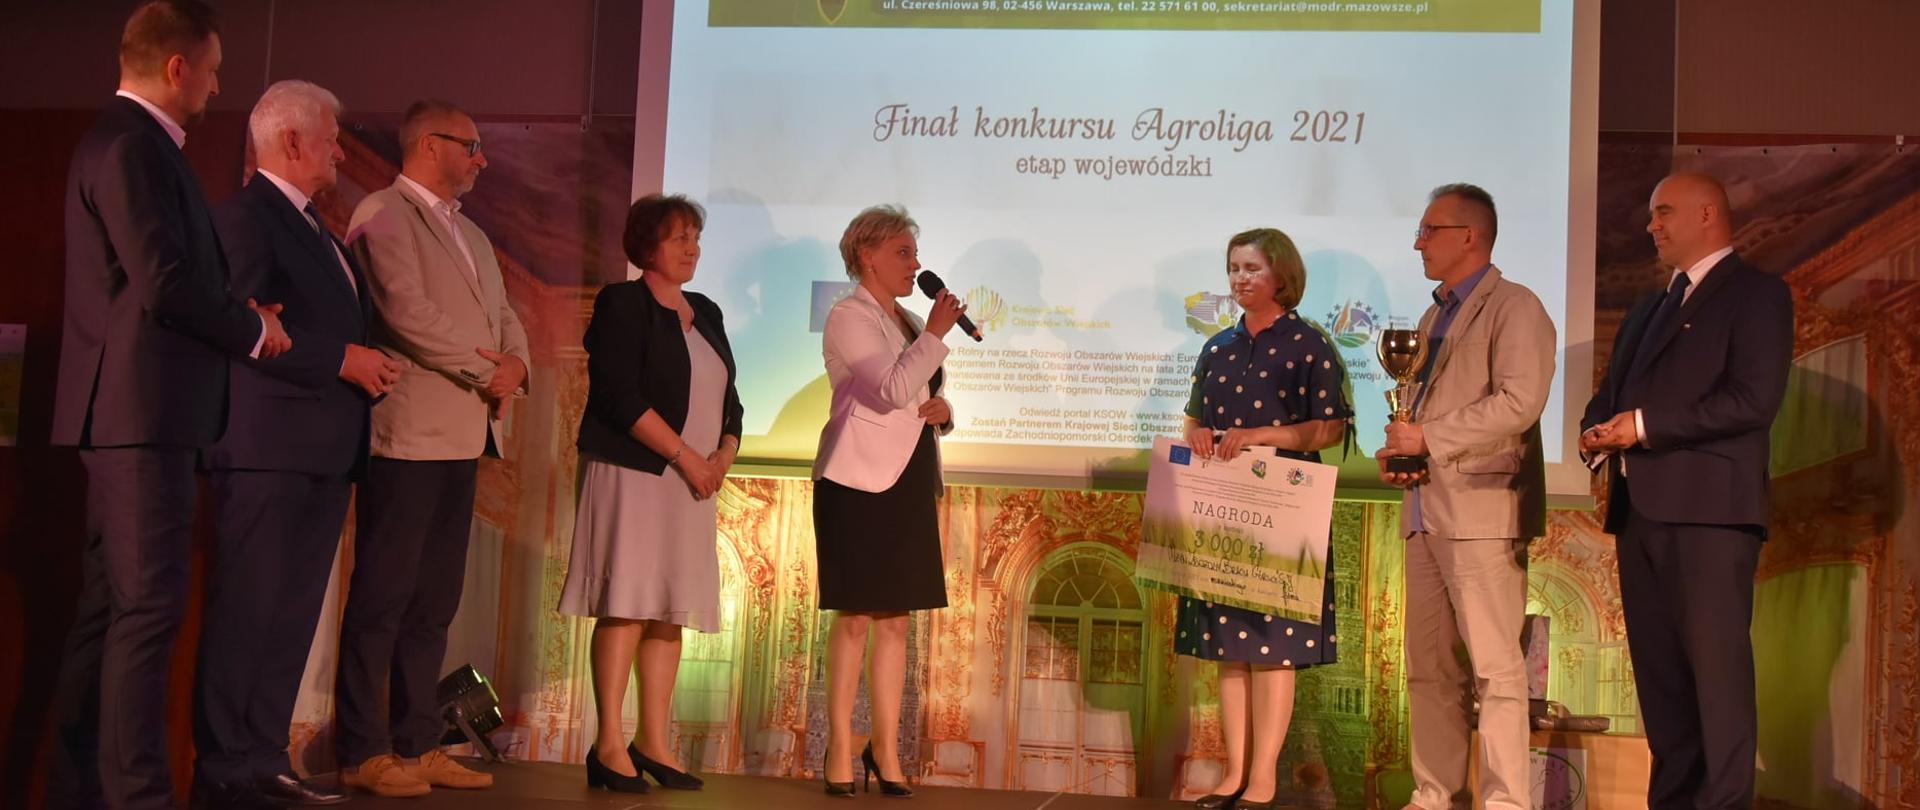 Wręczenie nagrody w Mszczonowie na gali podsumowującej konkurs AGROLIGA 2021